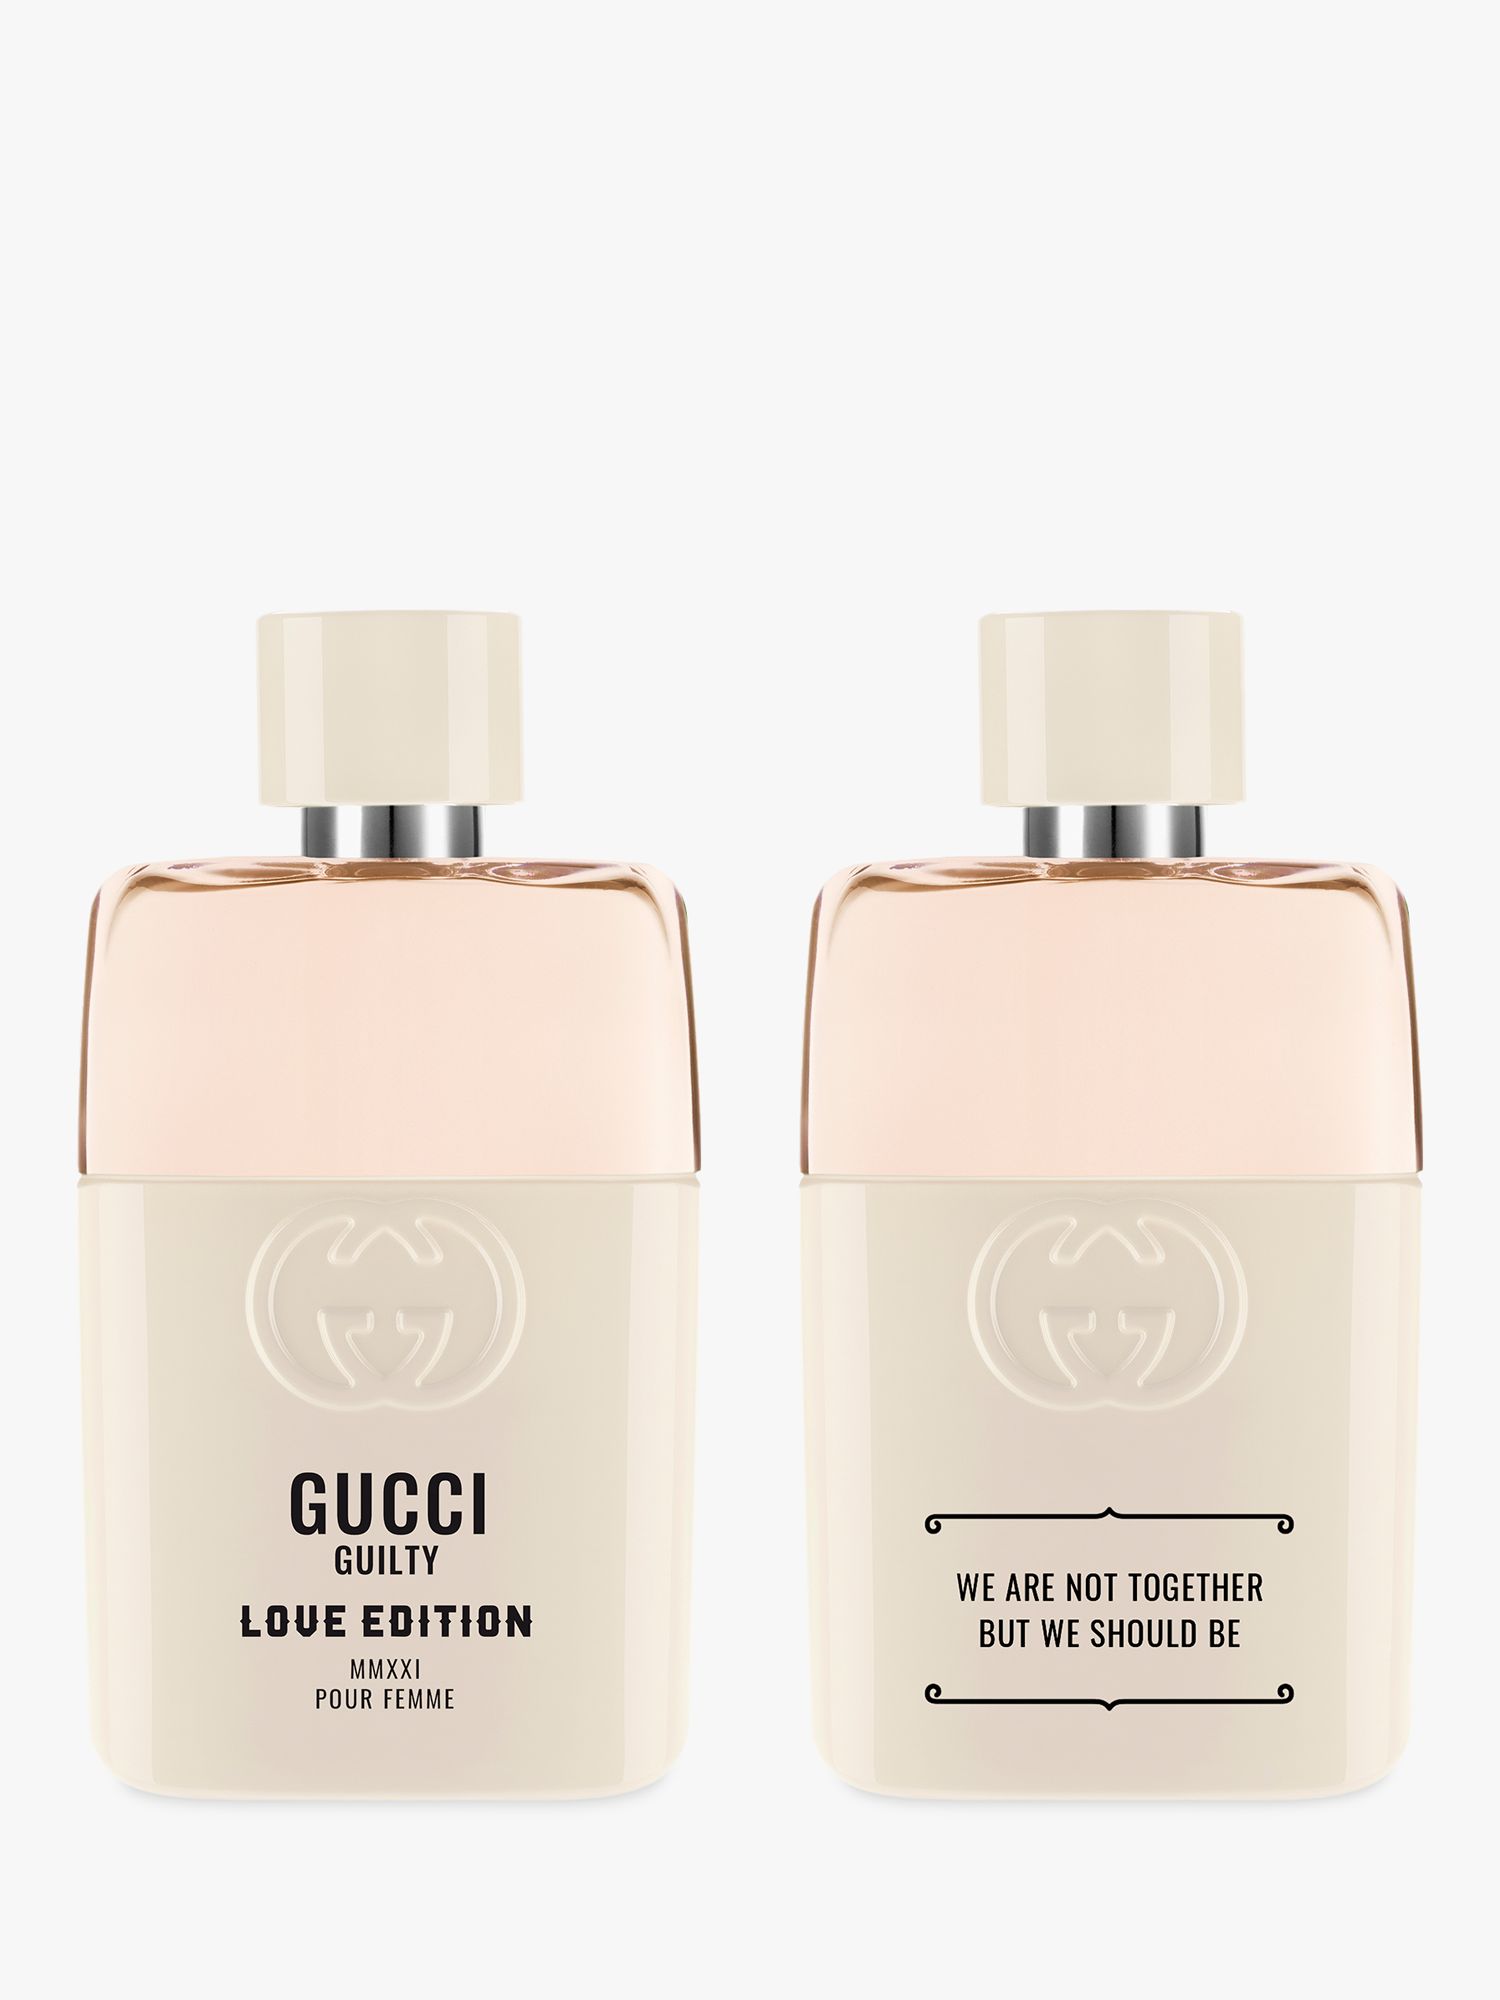 Gucci Guilty Love Edition Pour Femme Eau de Parfum For Her, 50ml